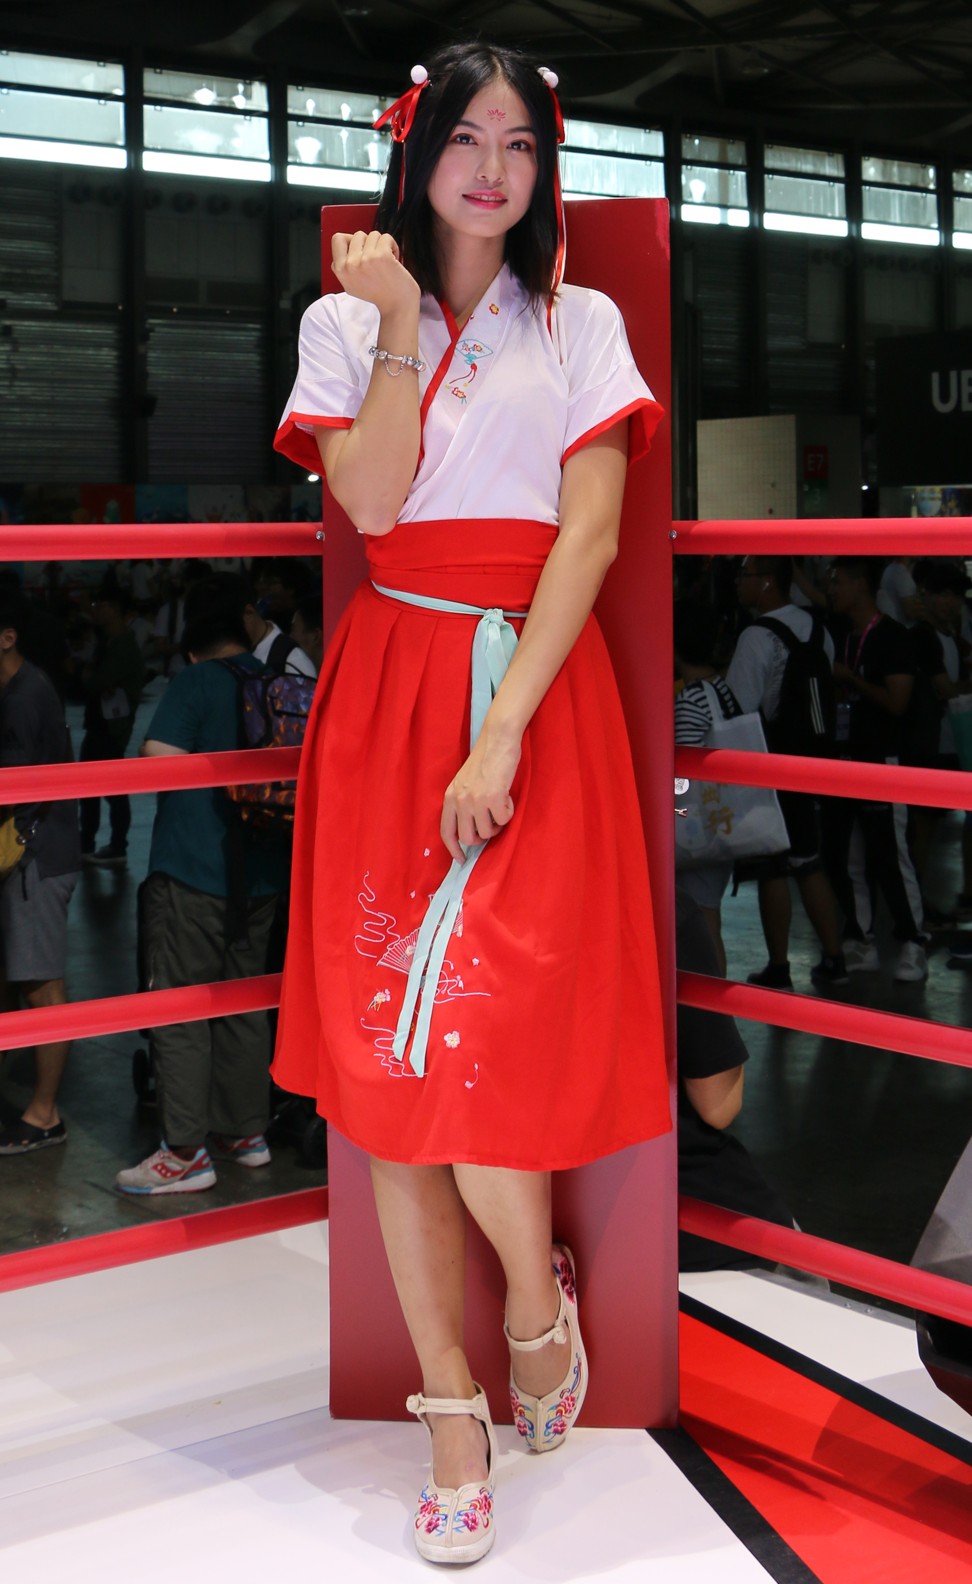 Liu Xinyi poses for photos at the boxing ring stage at Subor. Photo: Zheping Huang